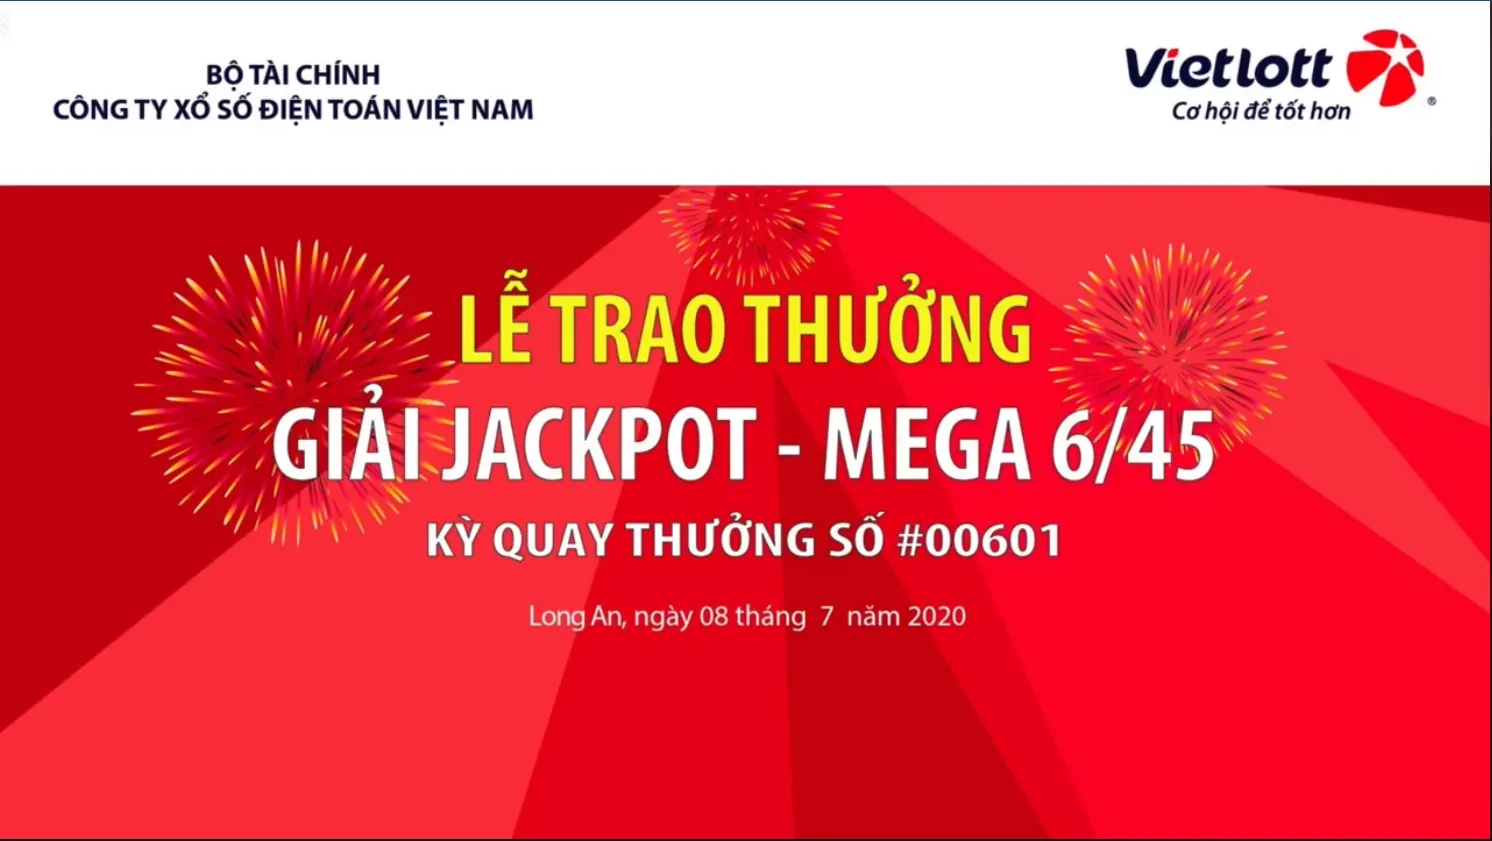 voh.com.vn-xo-so-vietlott-jackpot-mega-6/45-0